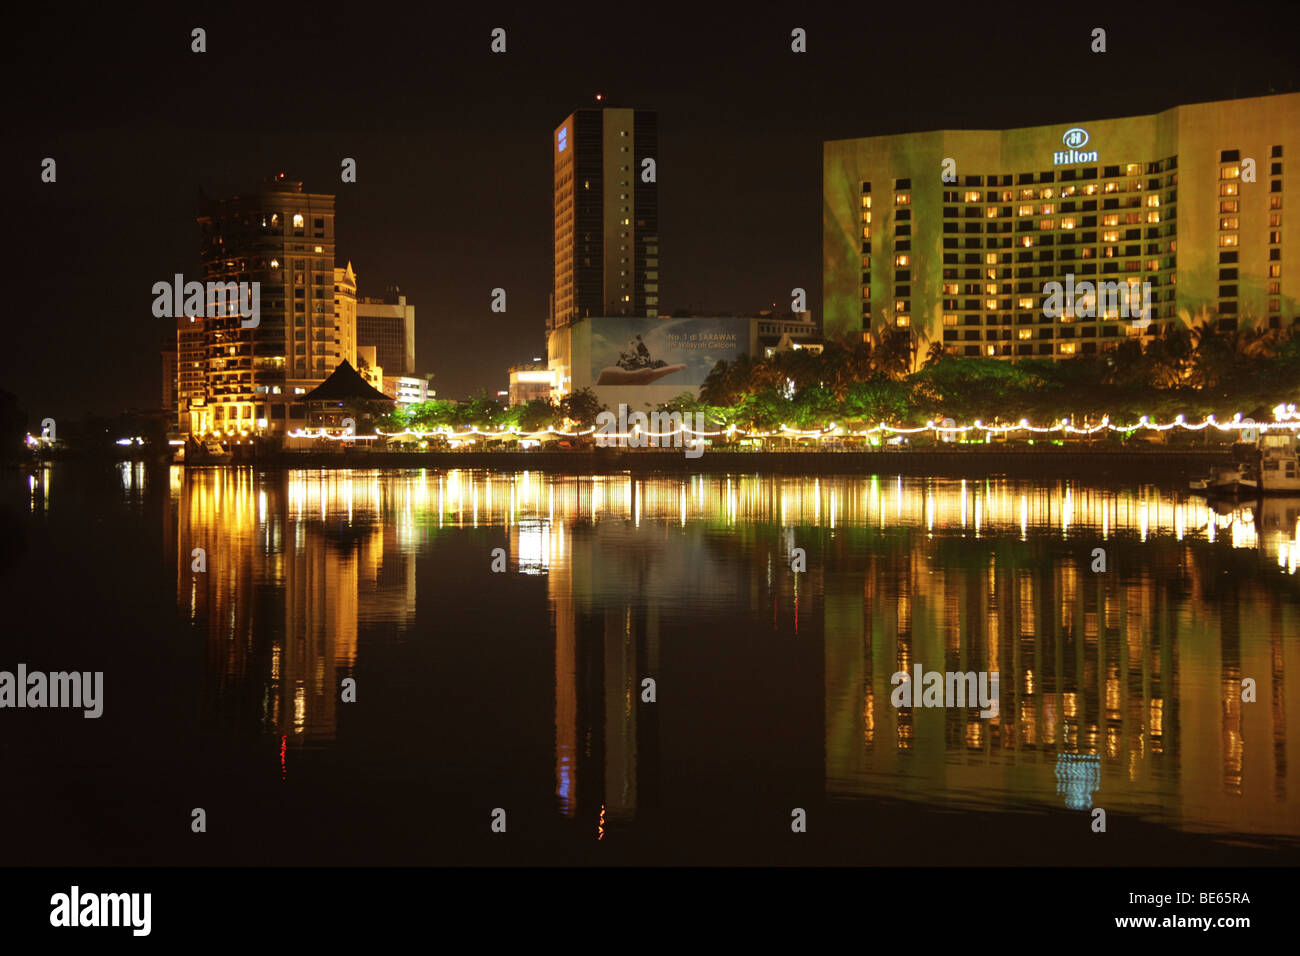 Hilton Hotel, Kuching Waterfront and Sarawak River, Kuching, Sarawak, Borneo, Malaysia, Southeast Asia Stock Photo